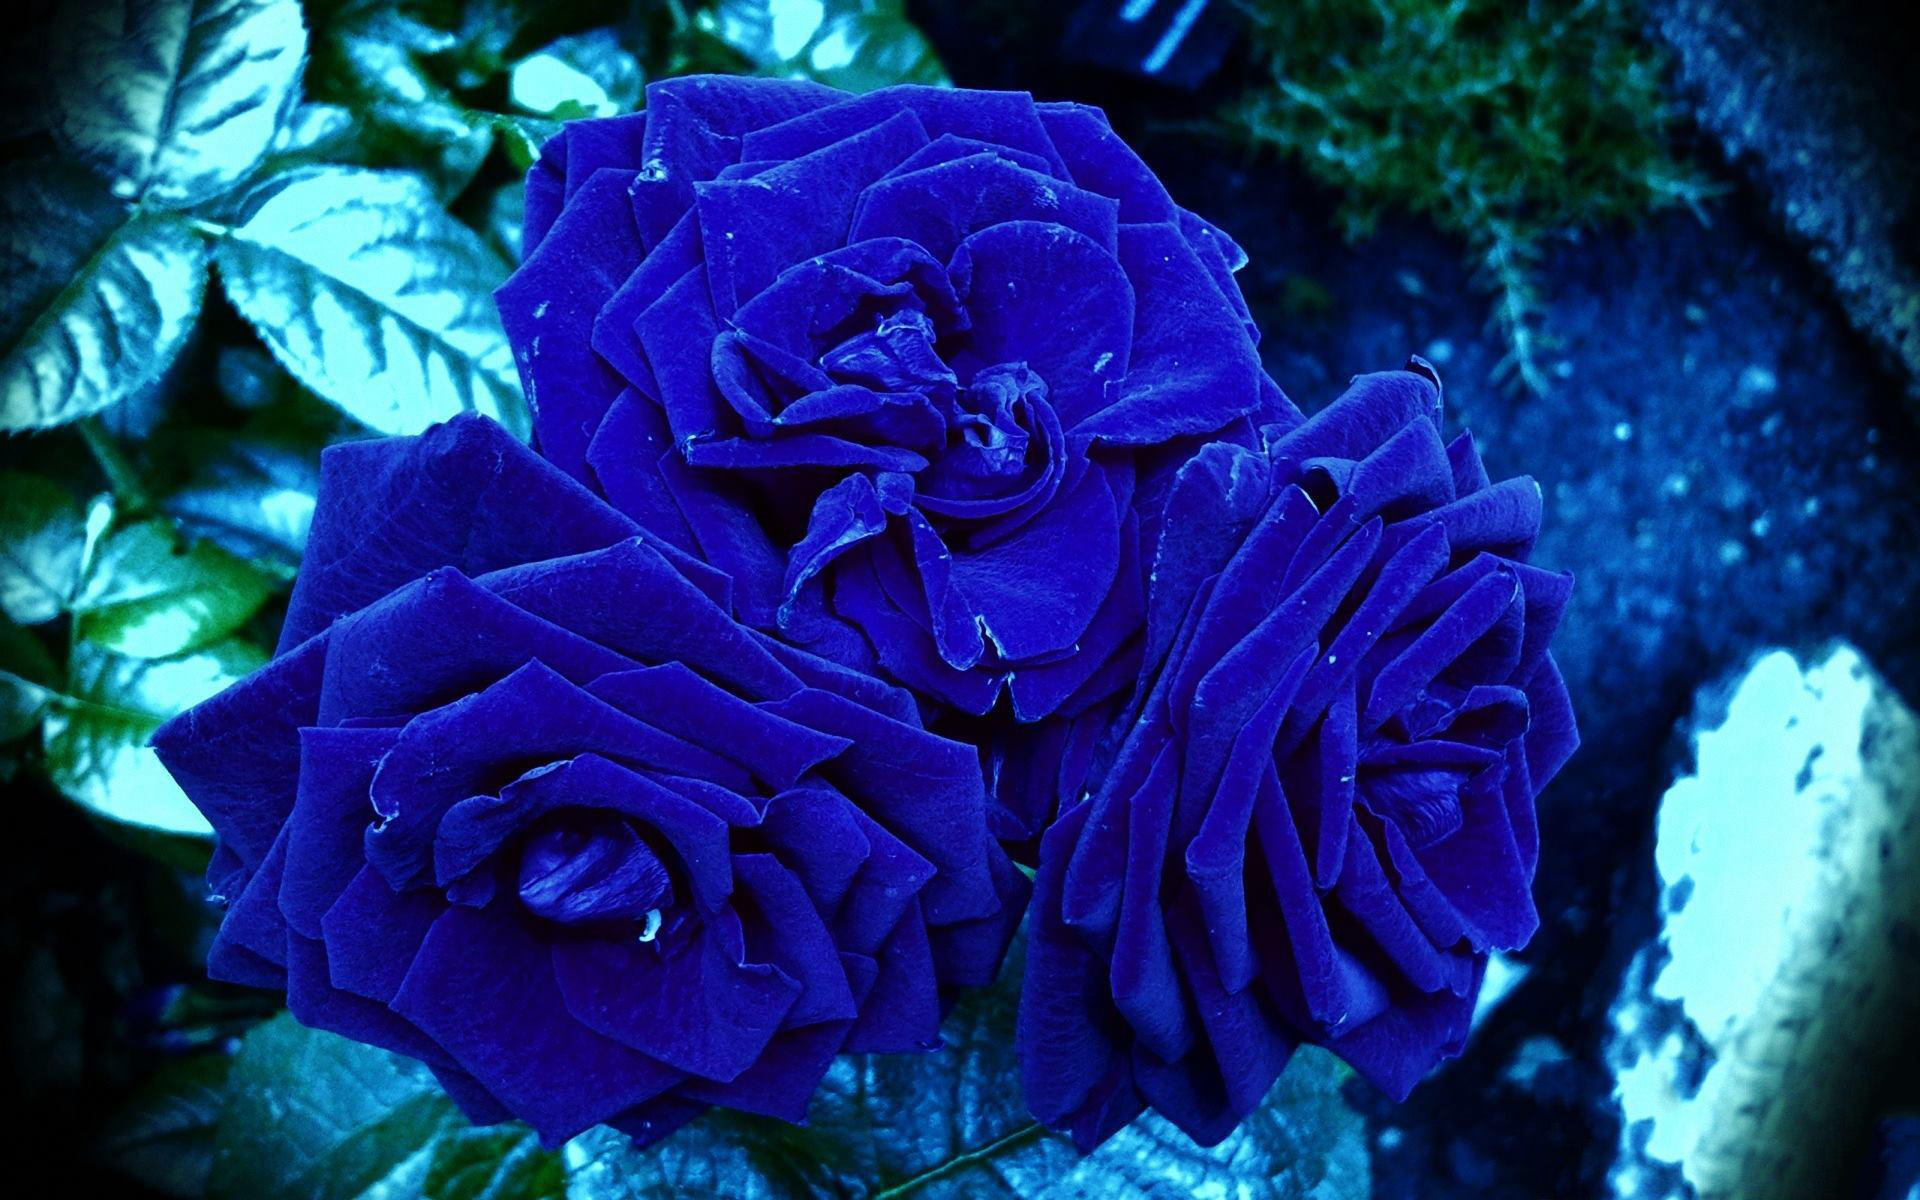 Hình nền hoa hồng xanh tuyệt đẹp cho smartphone